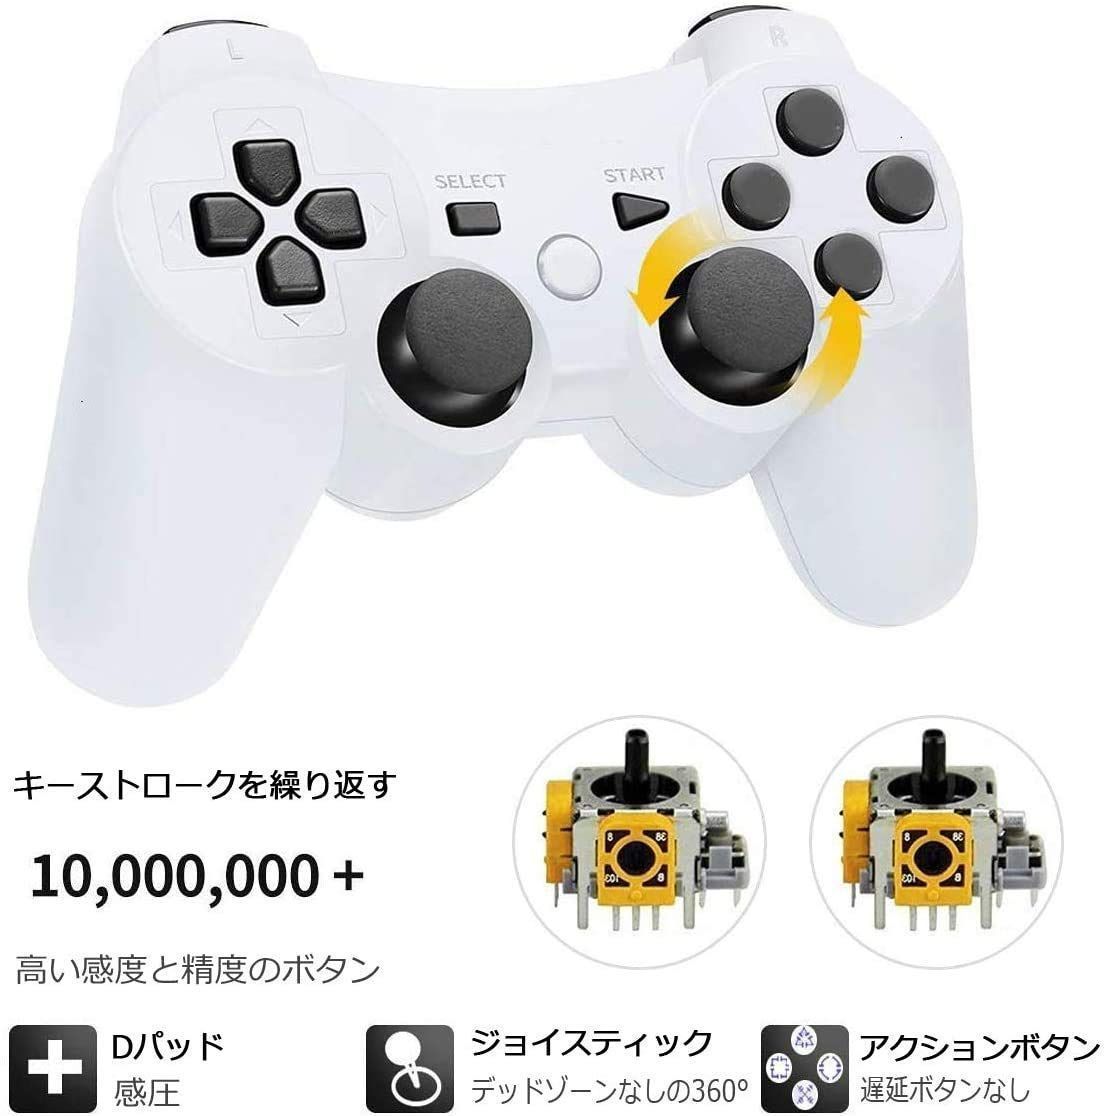 【人気商品】PS3 用 ワイヤレスコントローラー Fancyan 6軸センサー DUAL SHOCK3 ゲームパット 互換対応 USB ケーブル 日本語説明書(白)